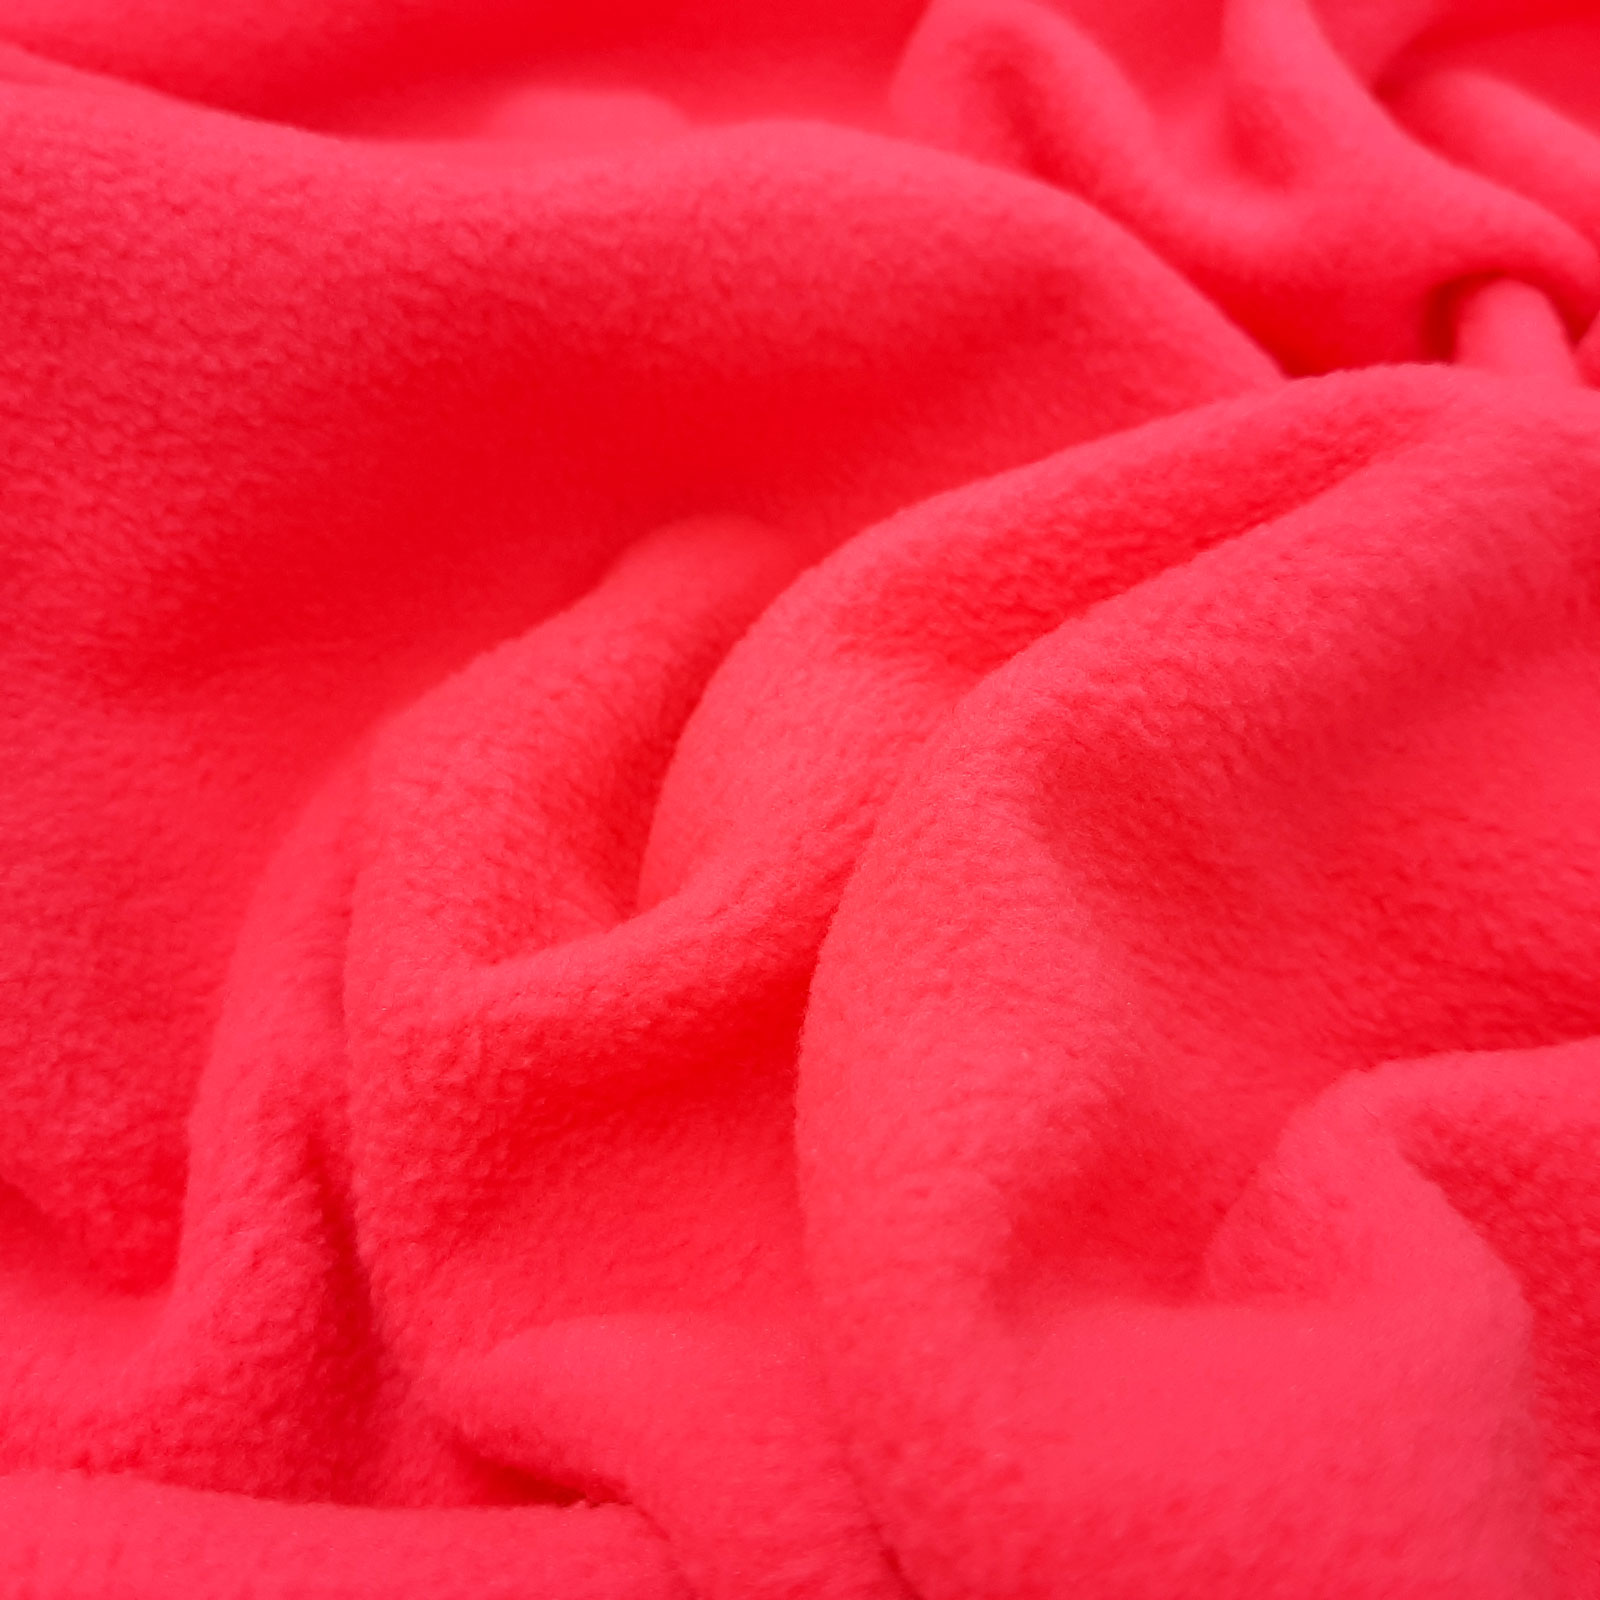 Pile polare – microfibra - Colori luminosi - Rosa neon